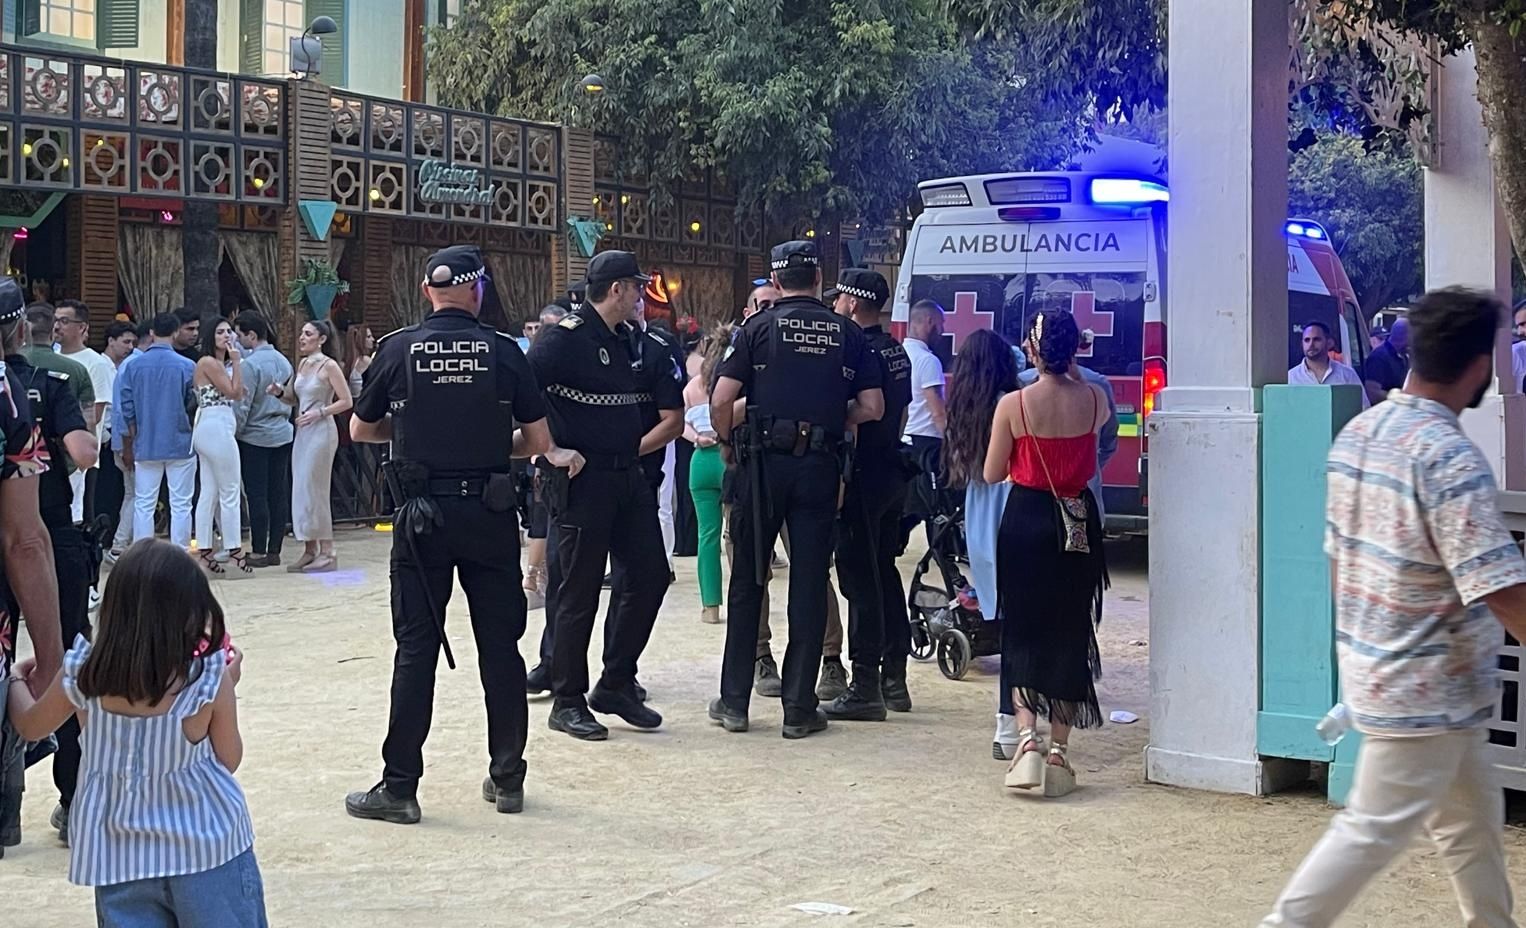 Enorme revuelo en la tarde de Feria de Jerez por una pelea en una caseta-discoteca. Policías y ambulancia ante la caseta Caché.